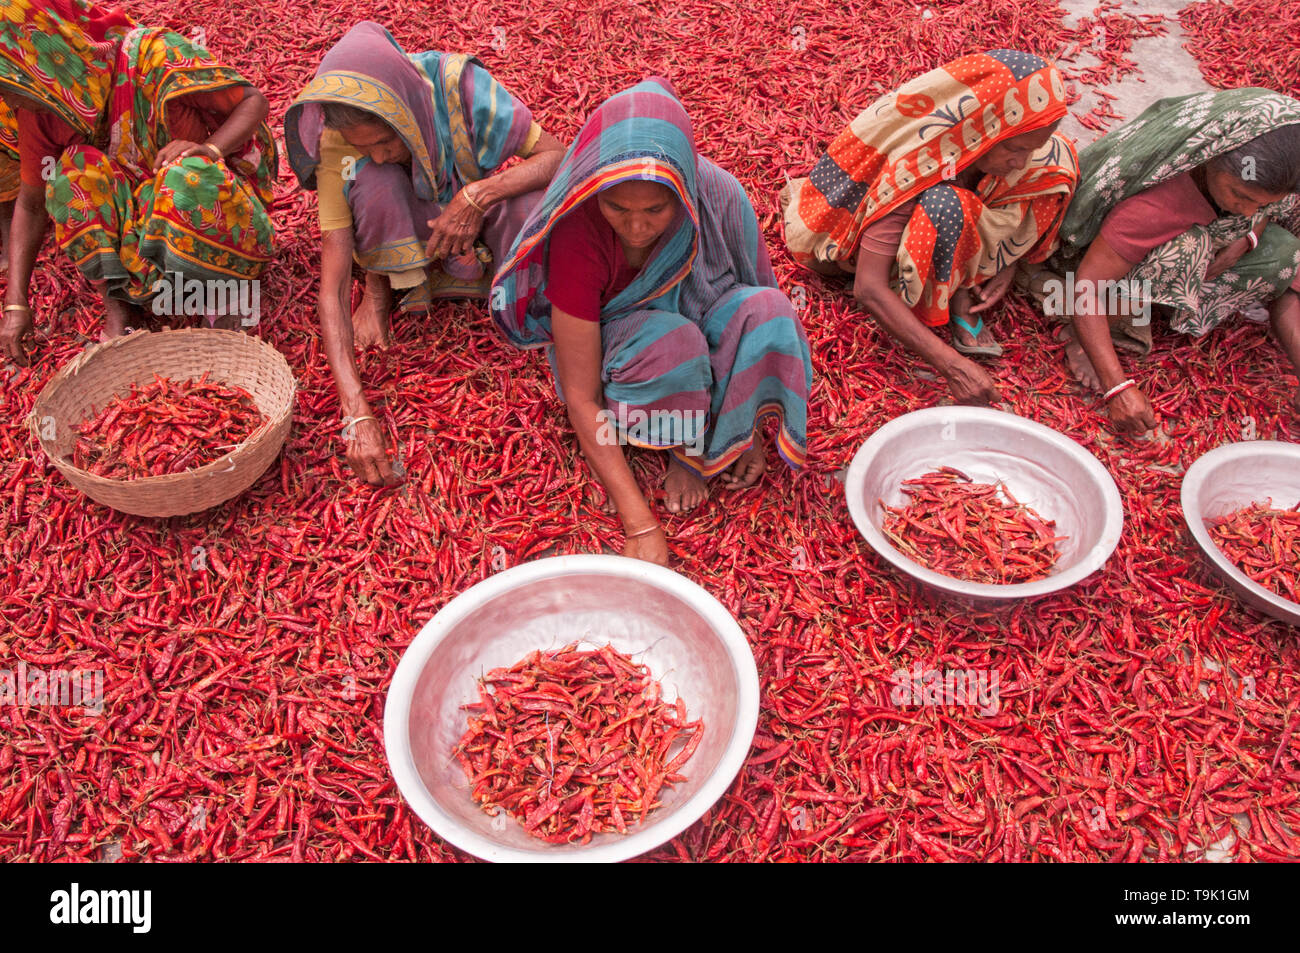 Bogra, Bangladesch. 05. april 2019. Frauen in Bangladesch verarbeiten und trocknen roten Chili unter der Sonne auf einem roten Chili-Trockenfeld am Stadtrand von Stockfoto